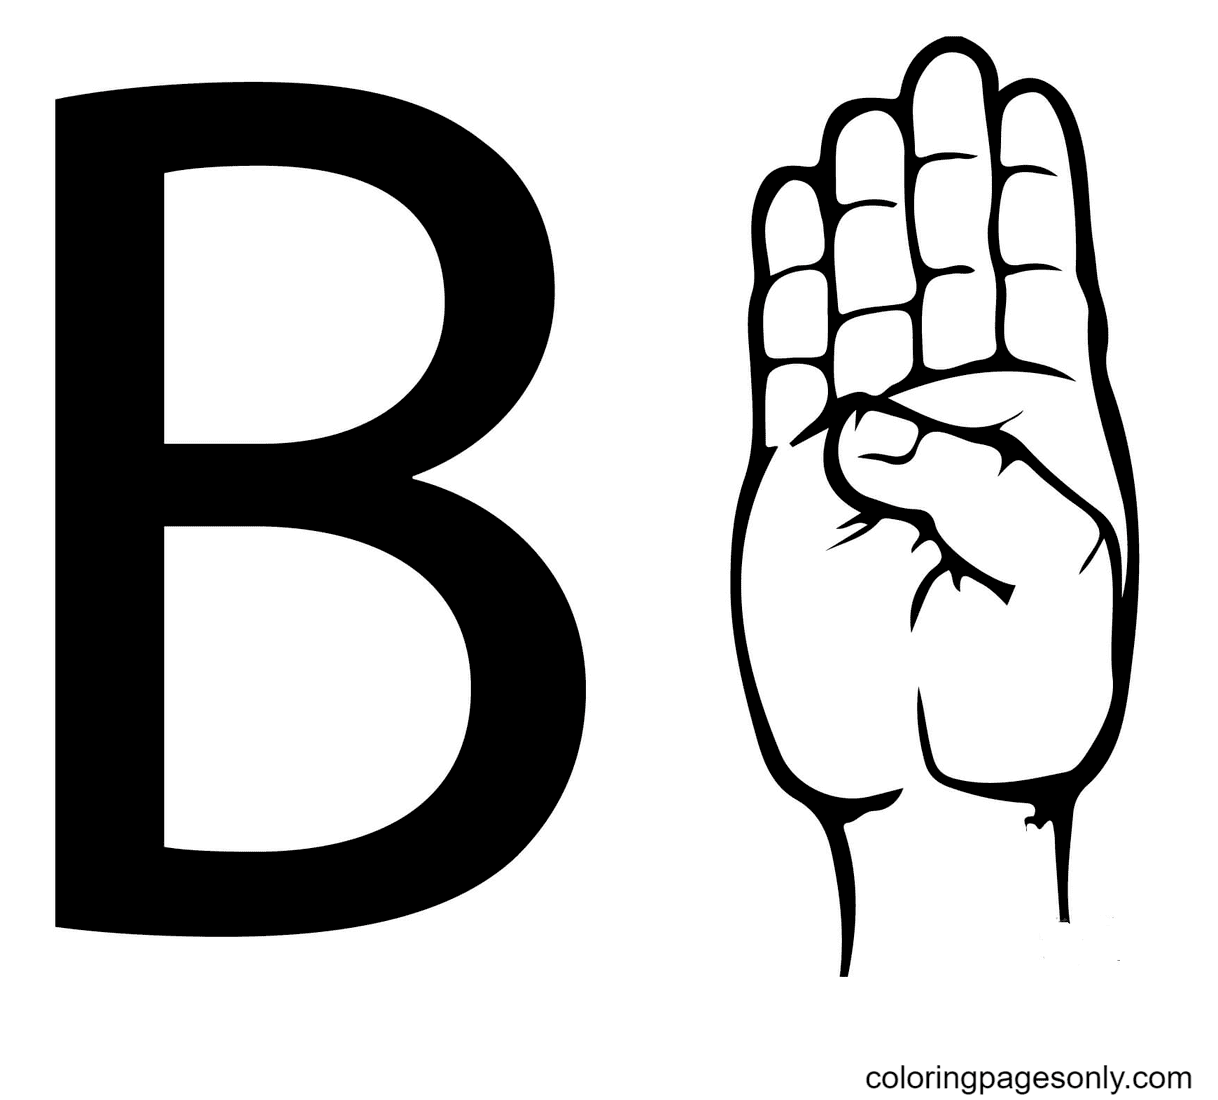 Letra B da linguagem de sinais ASL da letra B